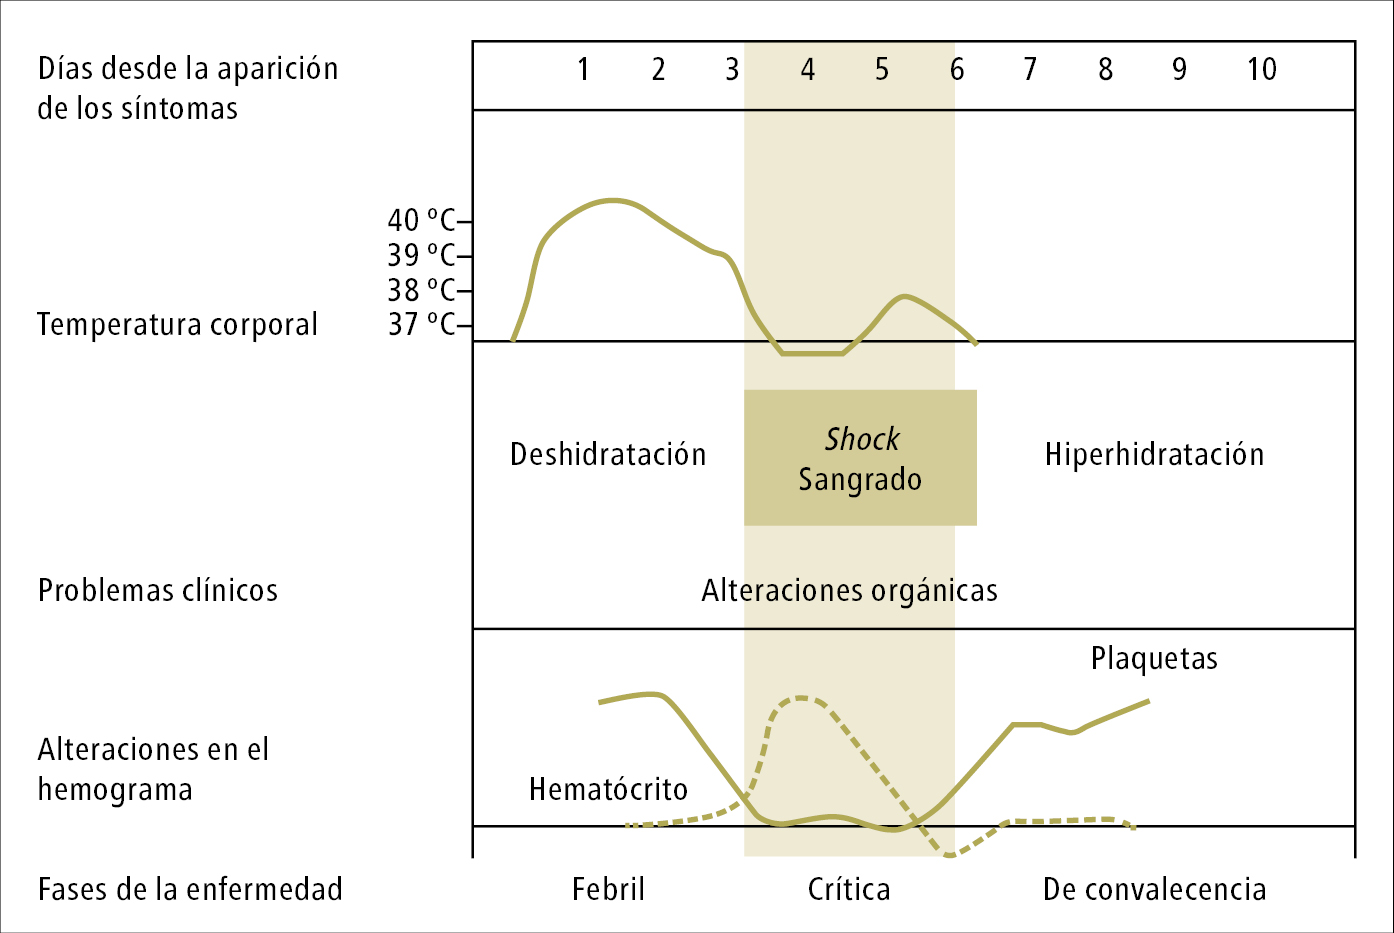    Fig. 19.1-1.  Fases de la enfermedad, síntomas y signos y alteraciones en el hemograma durante el desarrollo de dengue según la OMS (2009) 